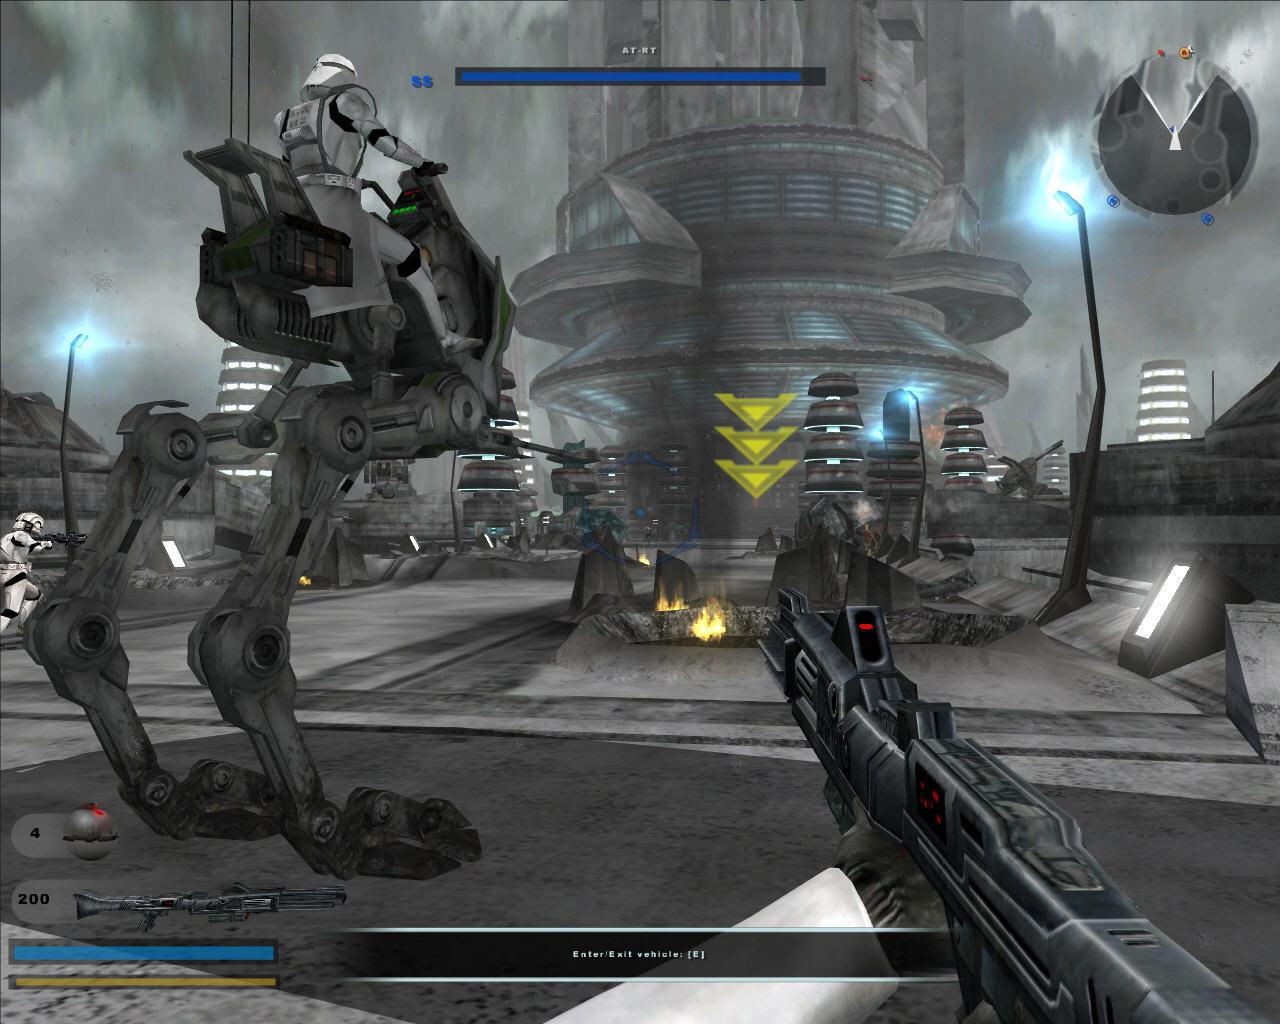 Star Wars: Battlefront II (2005) GAME MOD Battlefront II The Ultimate Sides  v.7.0 - download